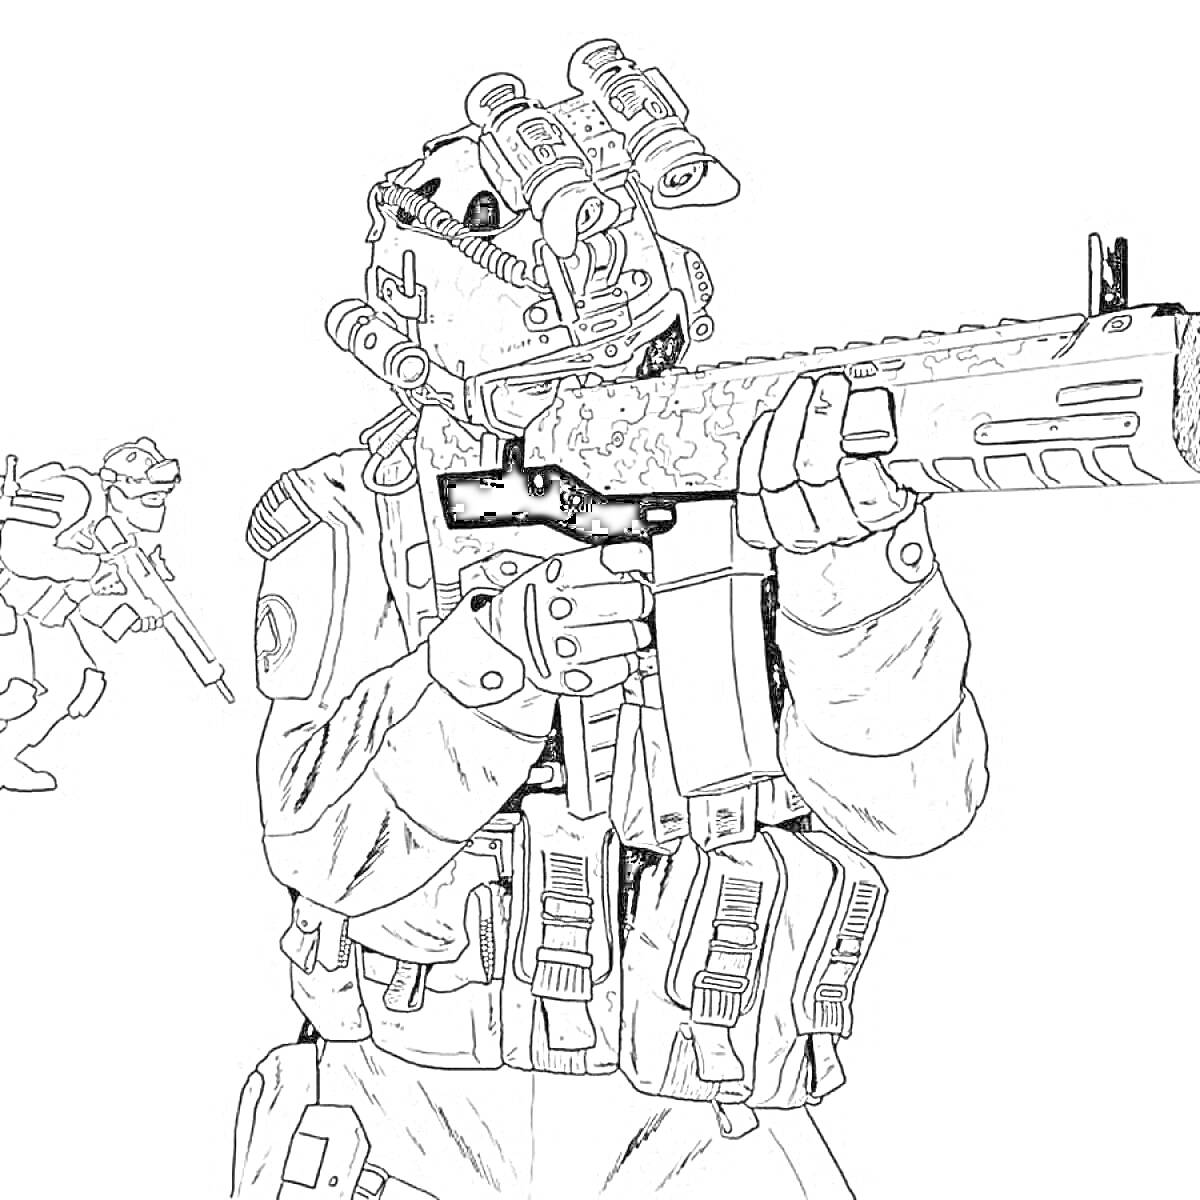 Солдат, вооружённый винтовкой, в боевом снаряжении с дополнительным бойцом на фоне